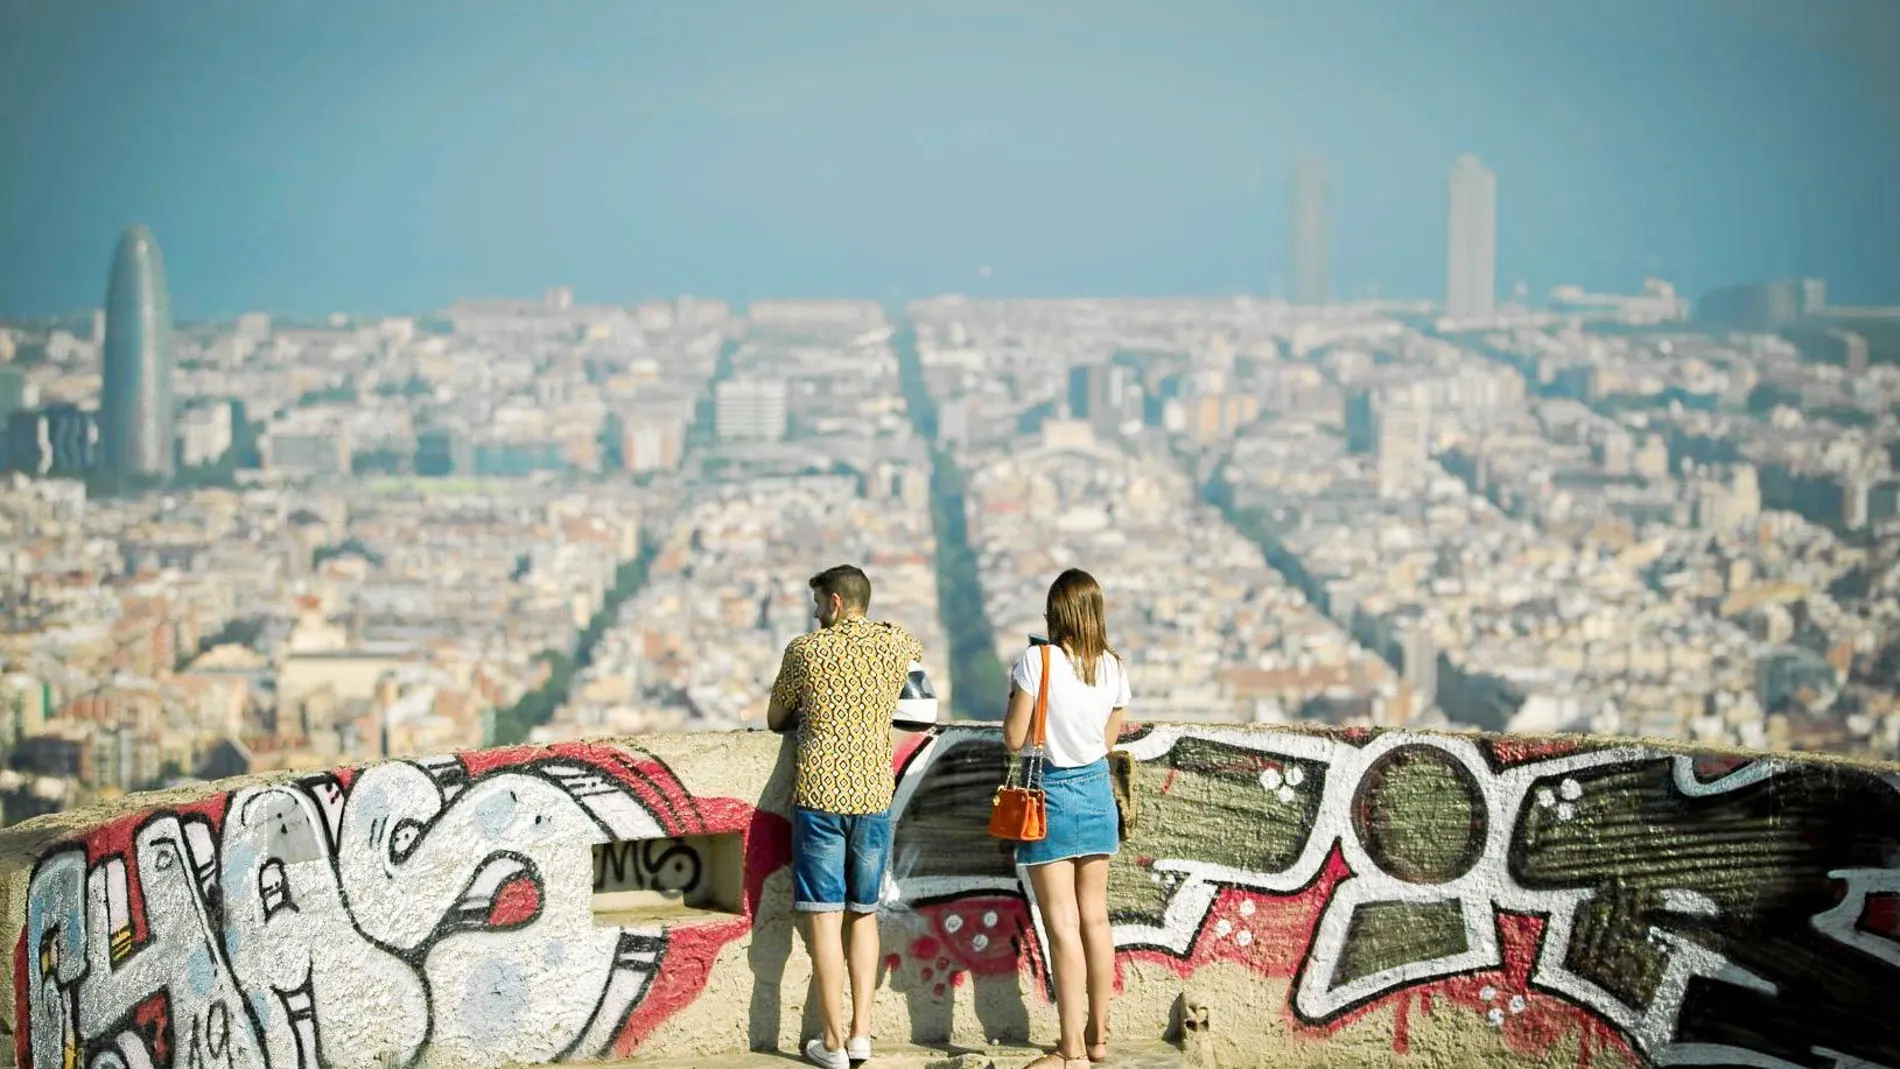 Boina de contaminación en el mirador Turó de la Rovira, en Barcelona. Foto: Mikel González/Shooting